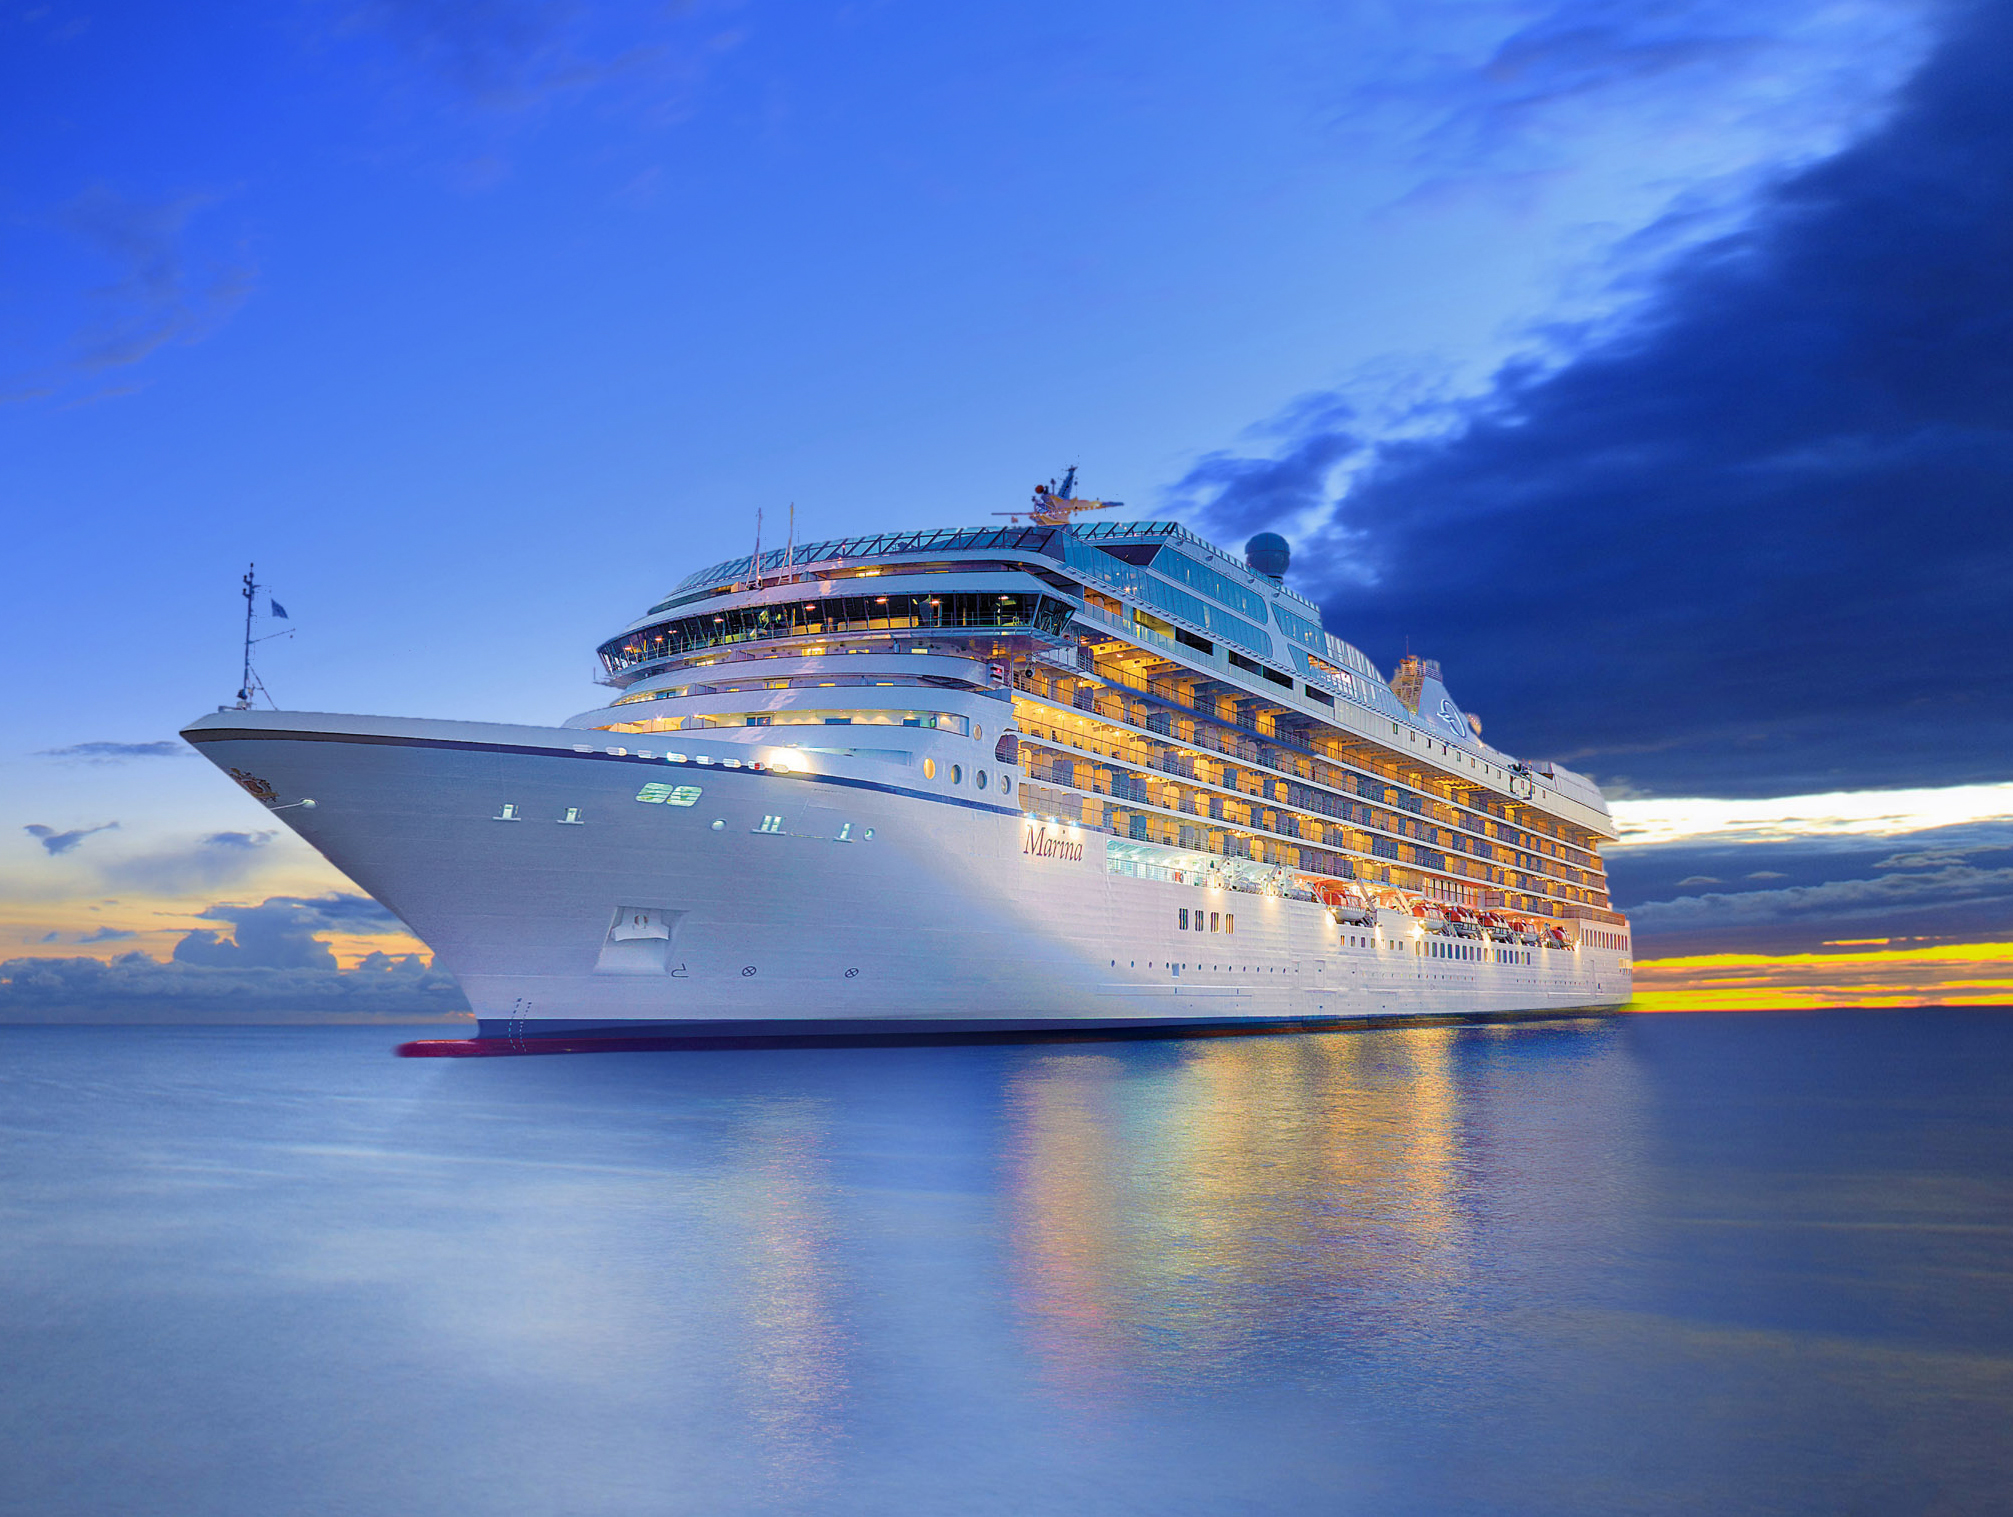 rejsy Oceania Cruises